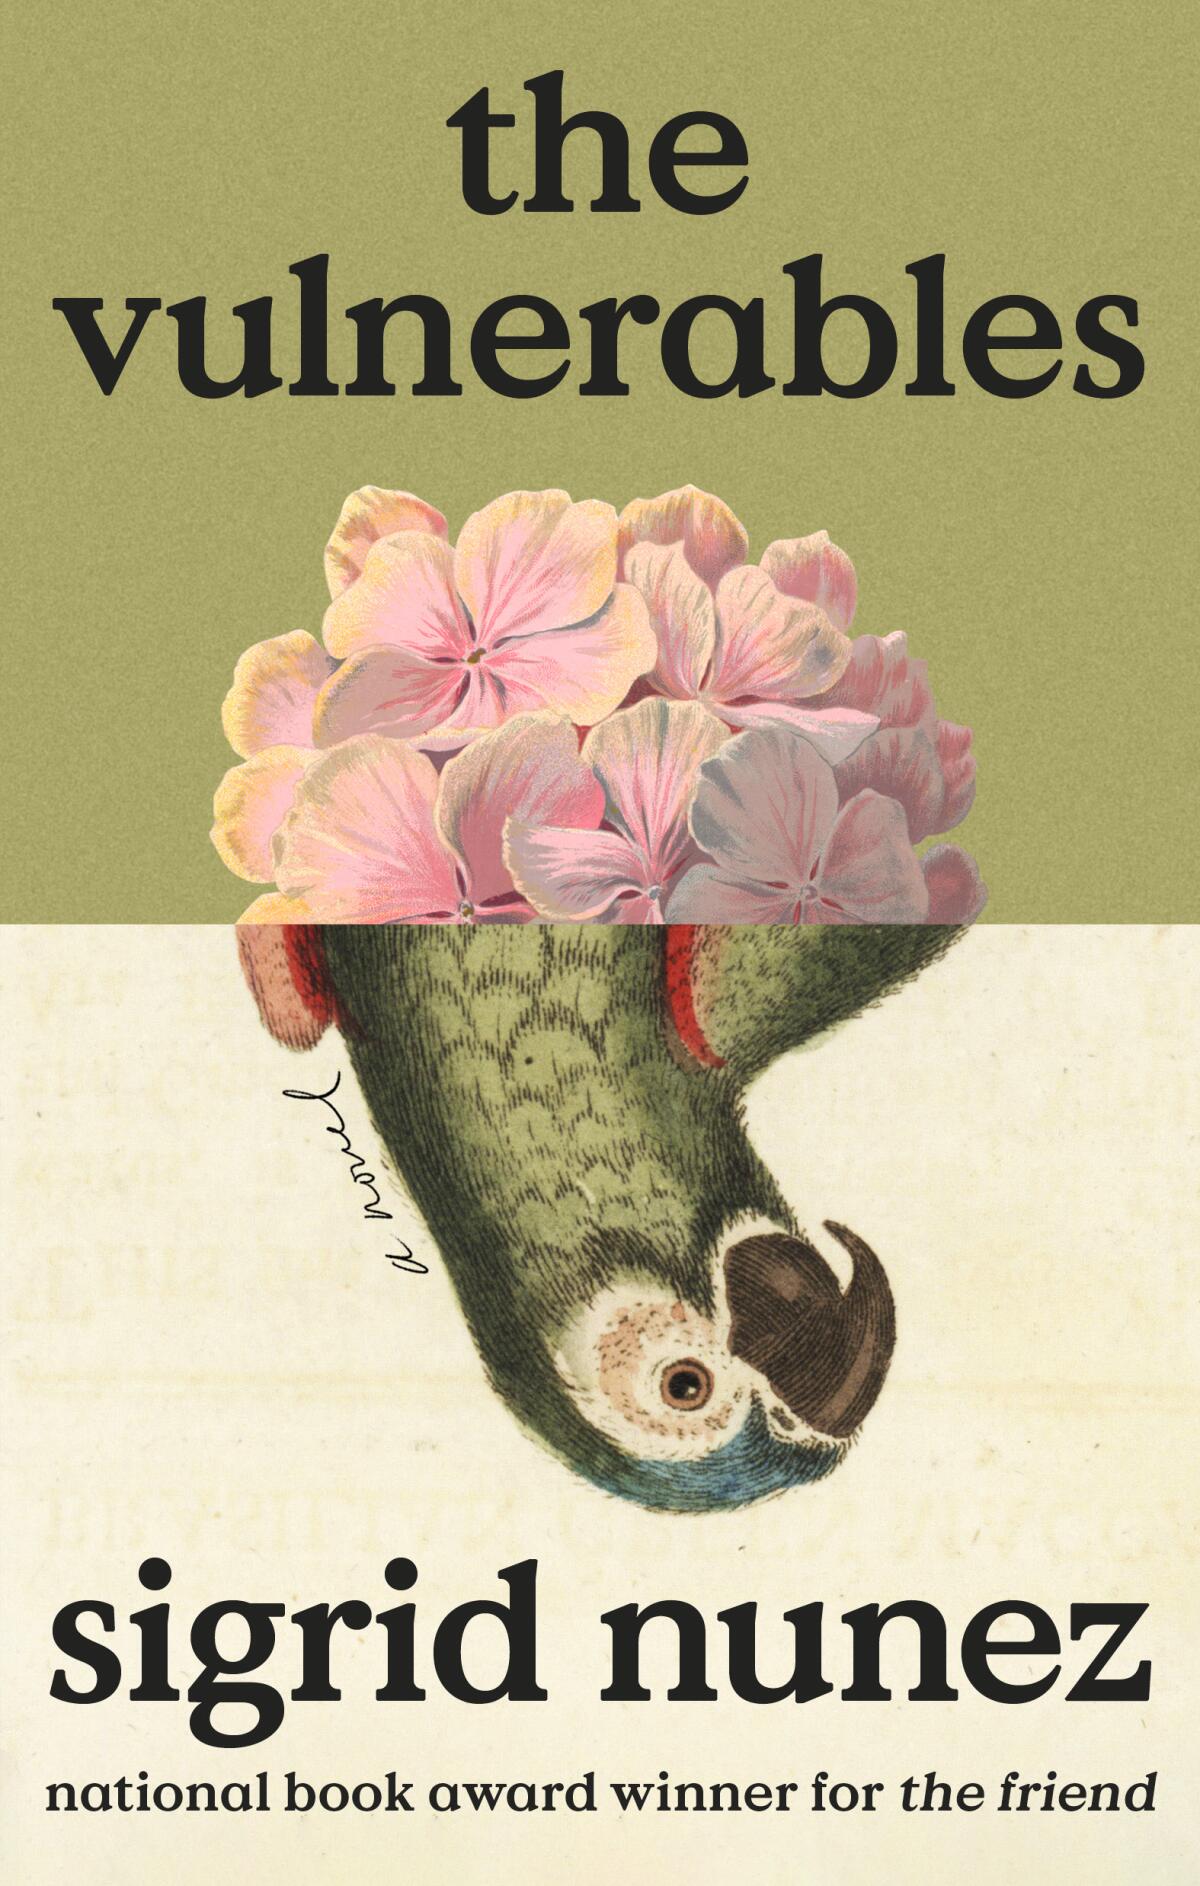 "The Vulnerables," by Sigrid Nunez